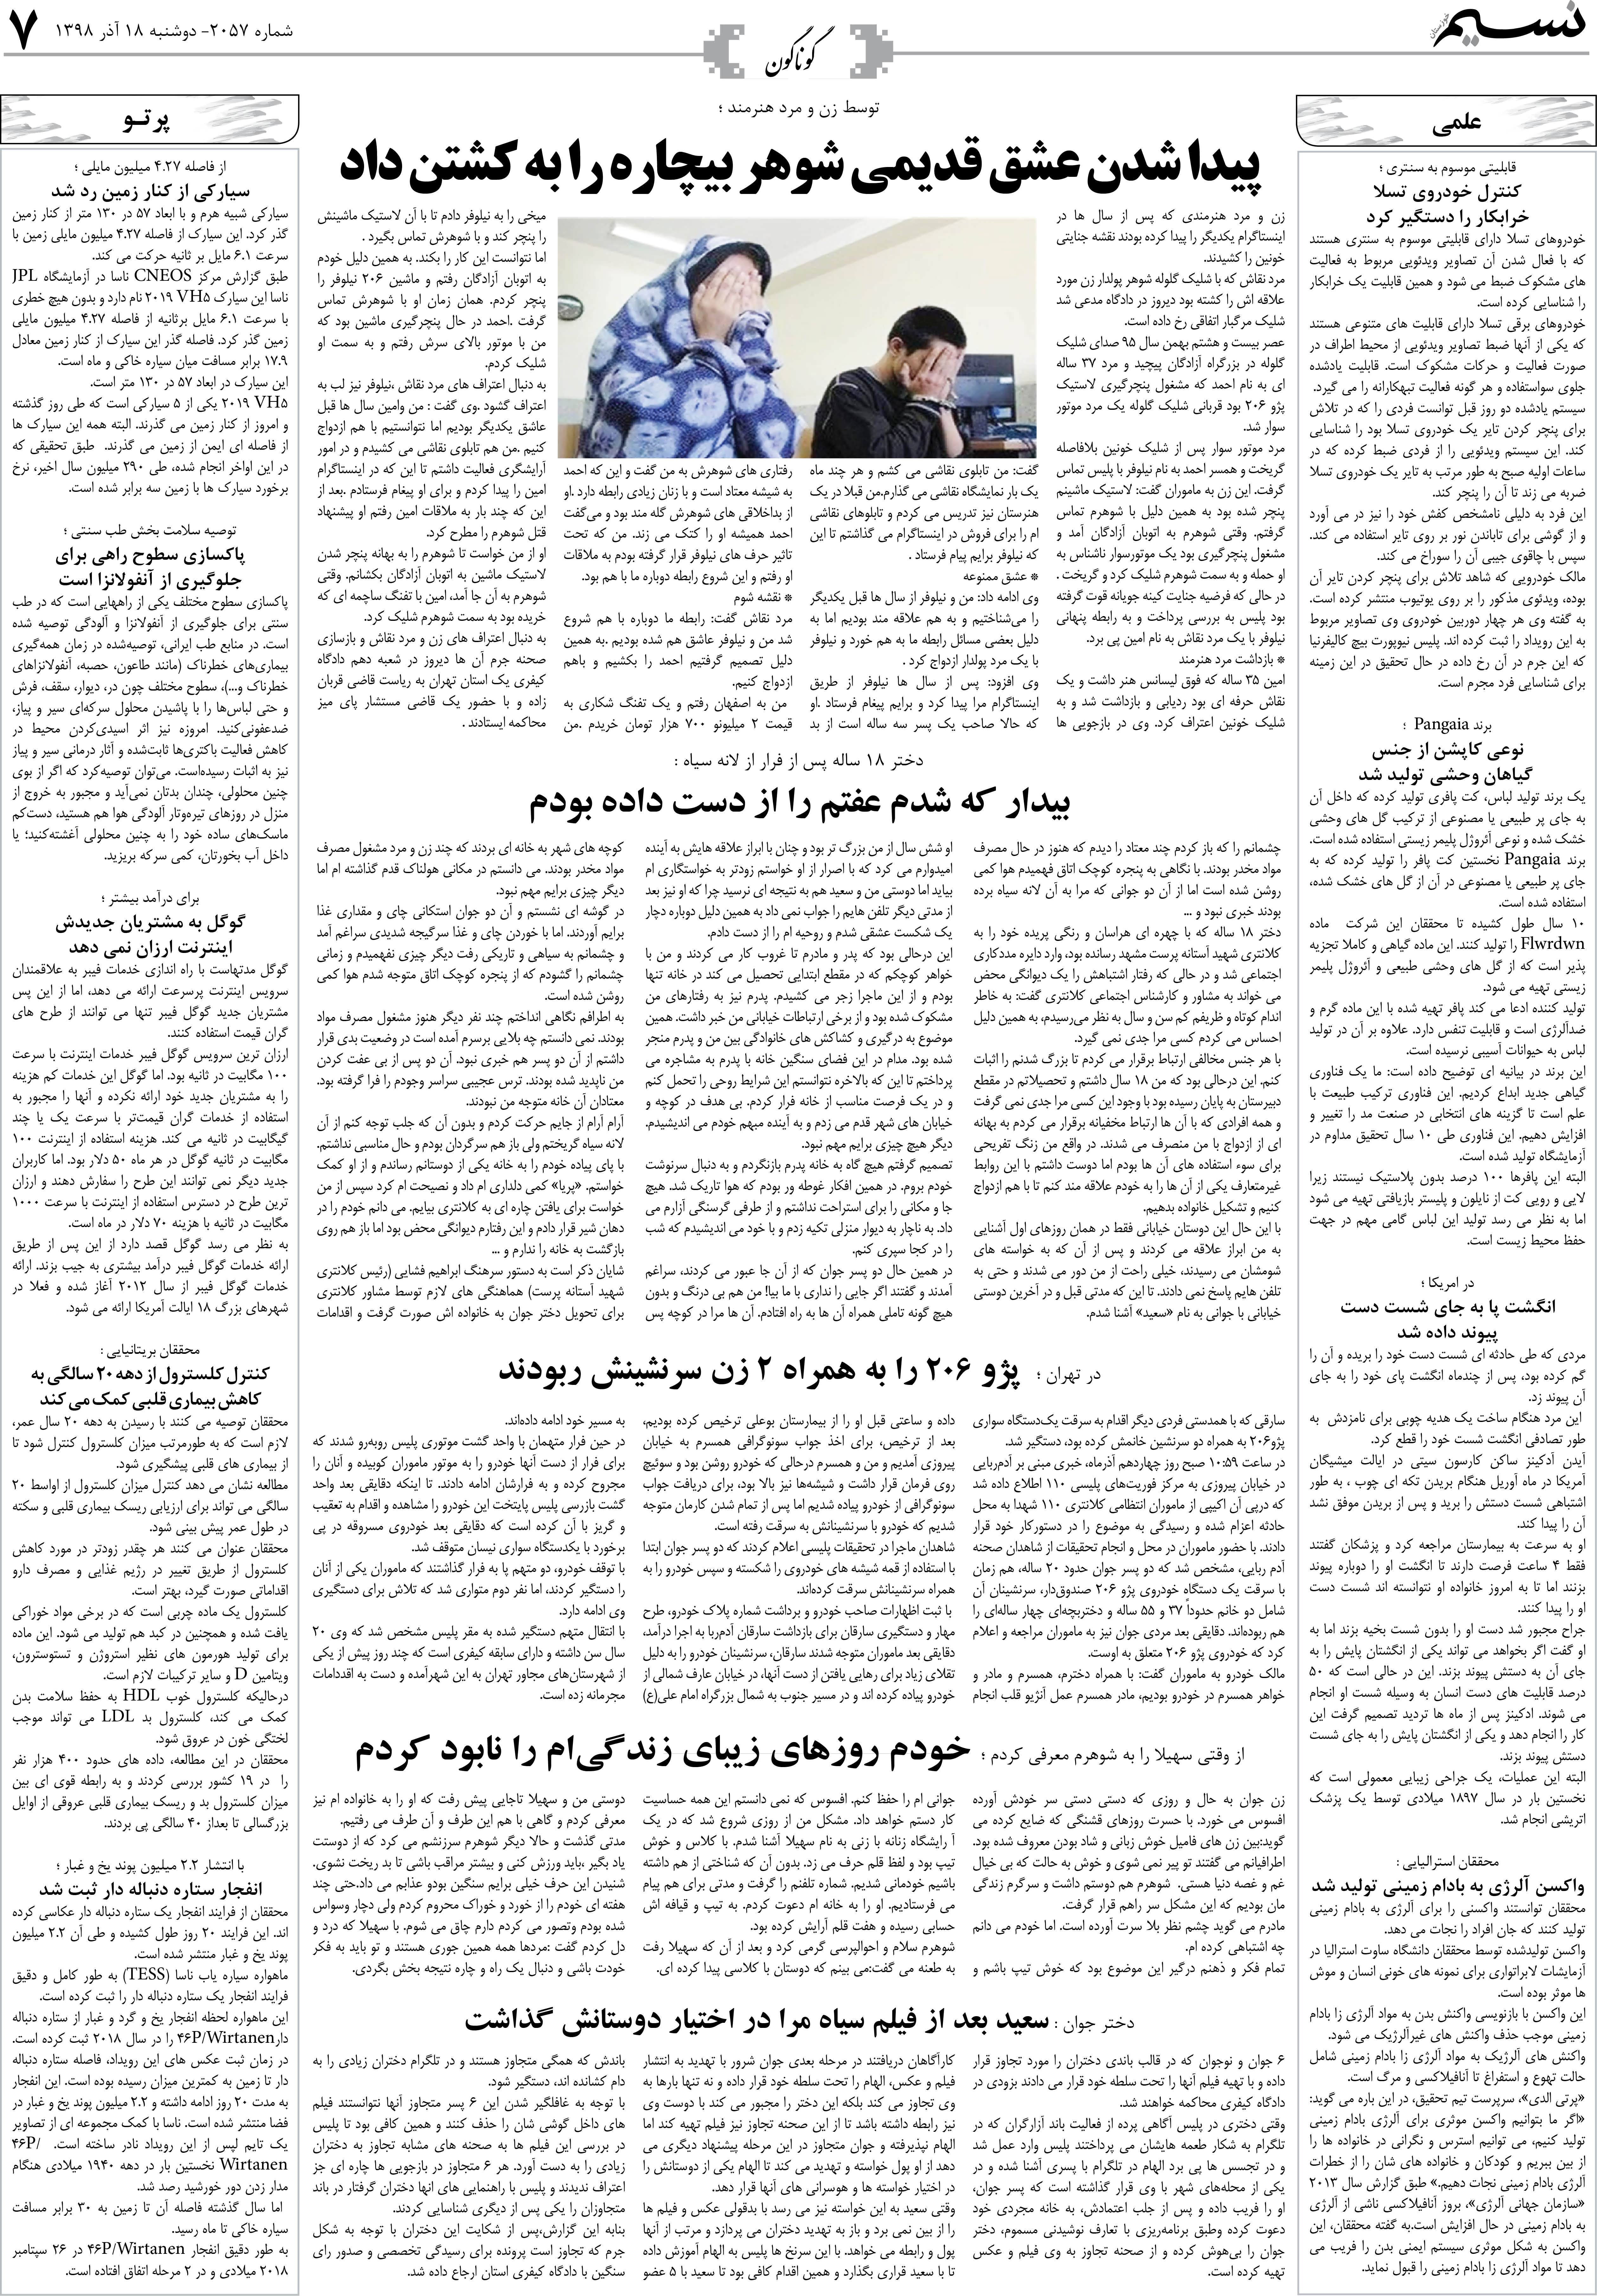 صفحه گوناگون روزنامه نسیم شماره 2057